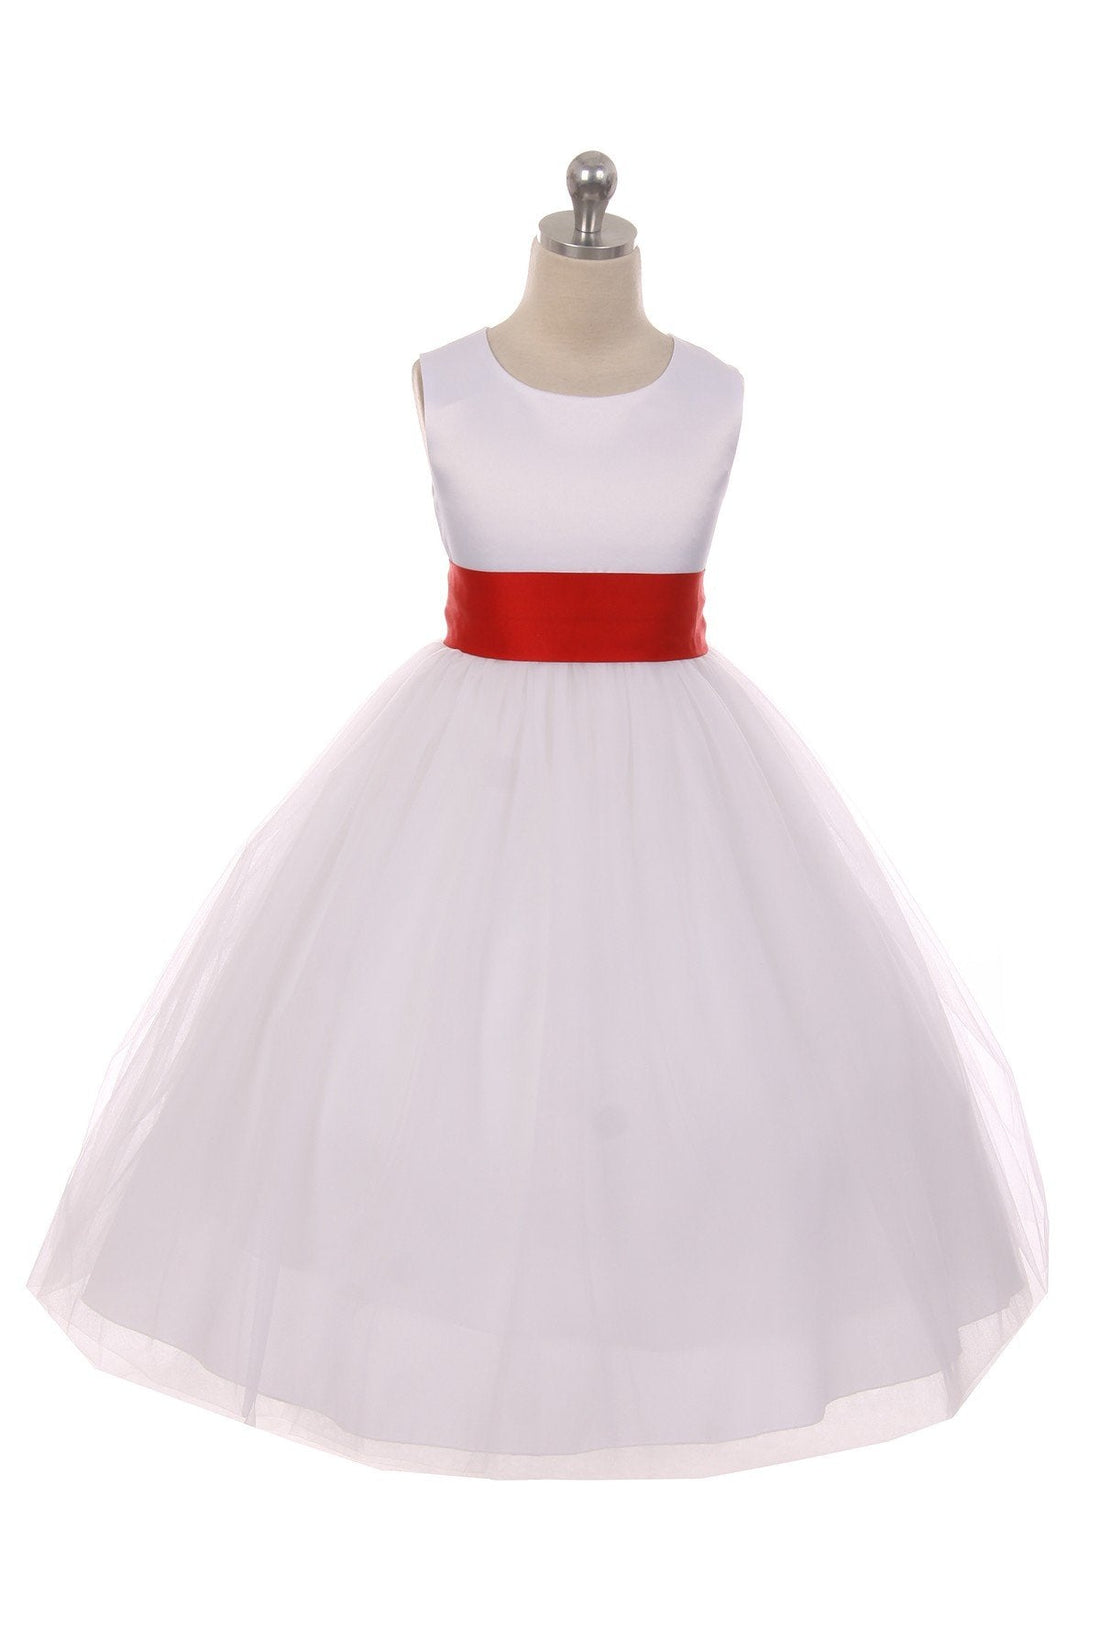 Red Girl Dress - Ivory Satin Sash Bow Girl Dress - AS411 Kids Dream